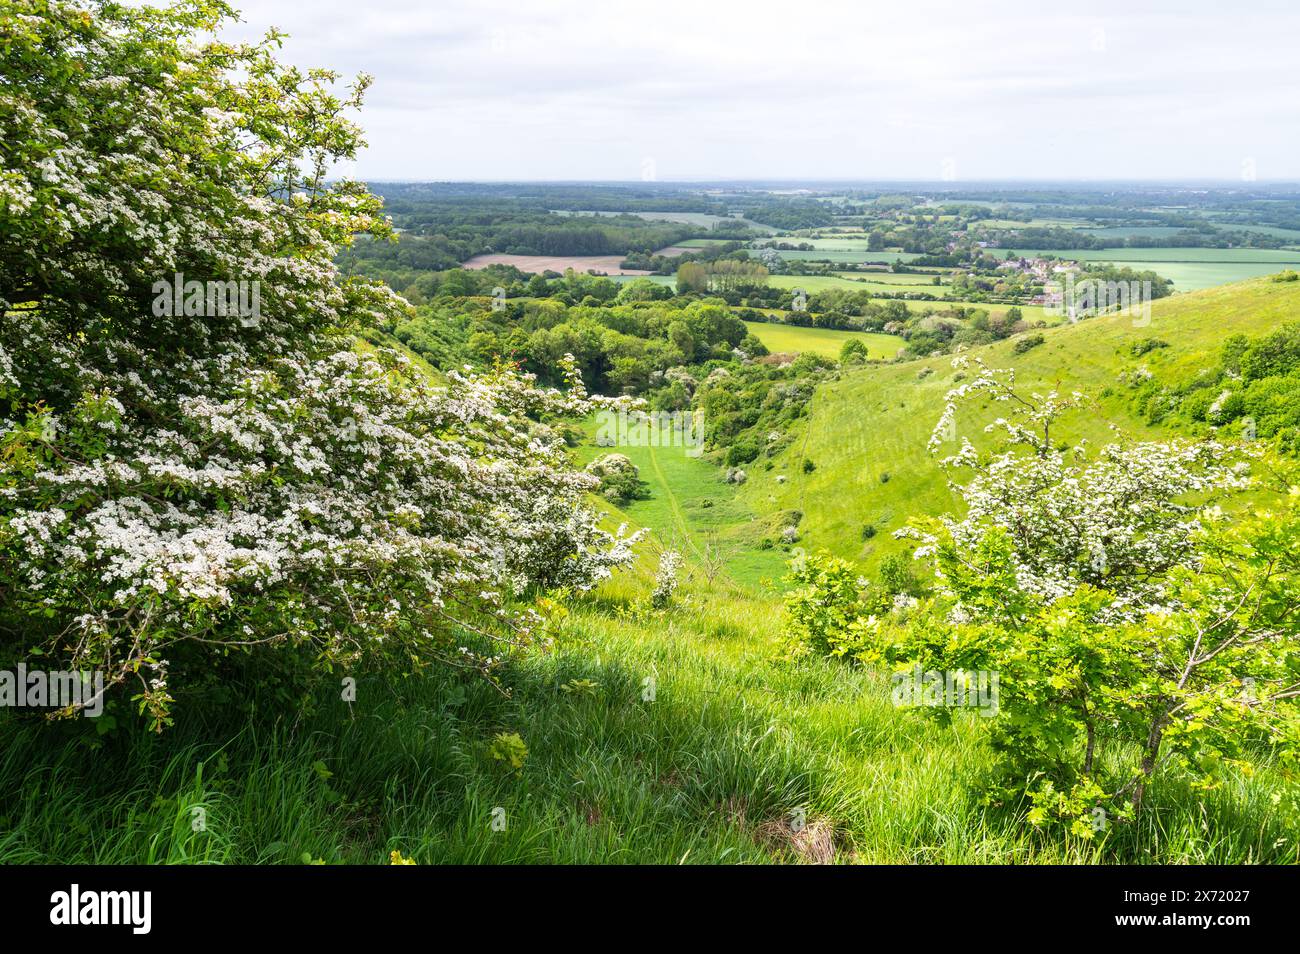 Le Devil's pétrissage traverse la vallée sèche dans la réserve naturelle nationale de Wye dans le paysage national du Kent, avec de l'herbe verte luxuriante et des arbres. Banque D'Images